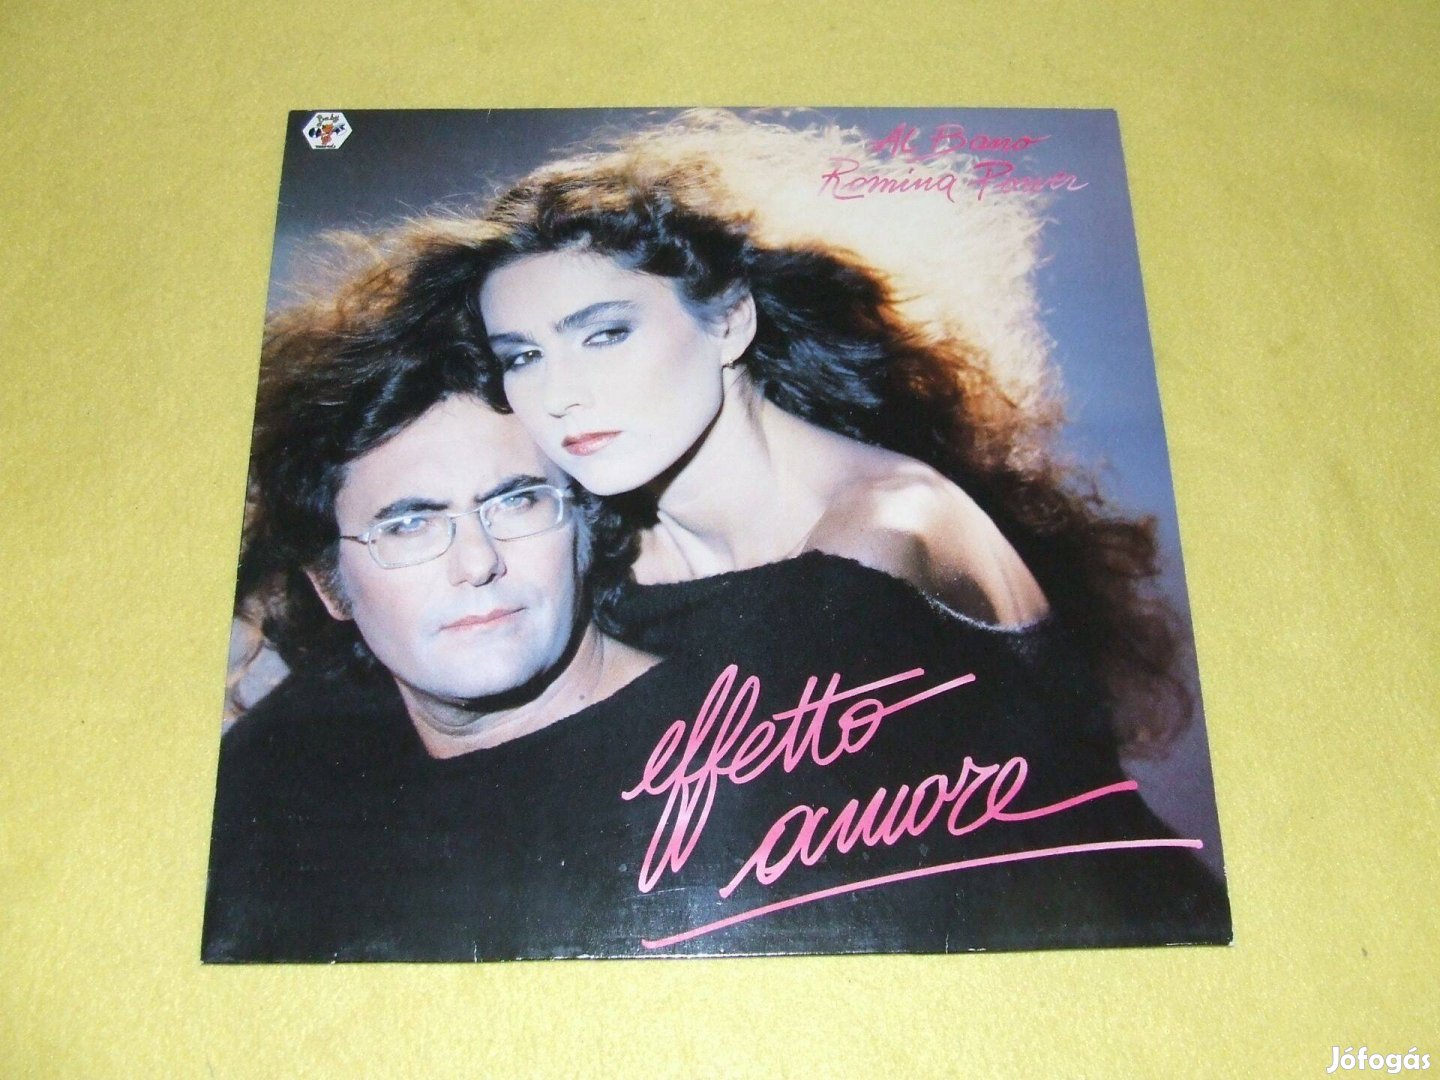 Al Bano & Romina Power: Effetto Amore - német nyomású bakelit lemez